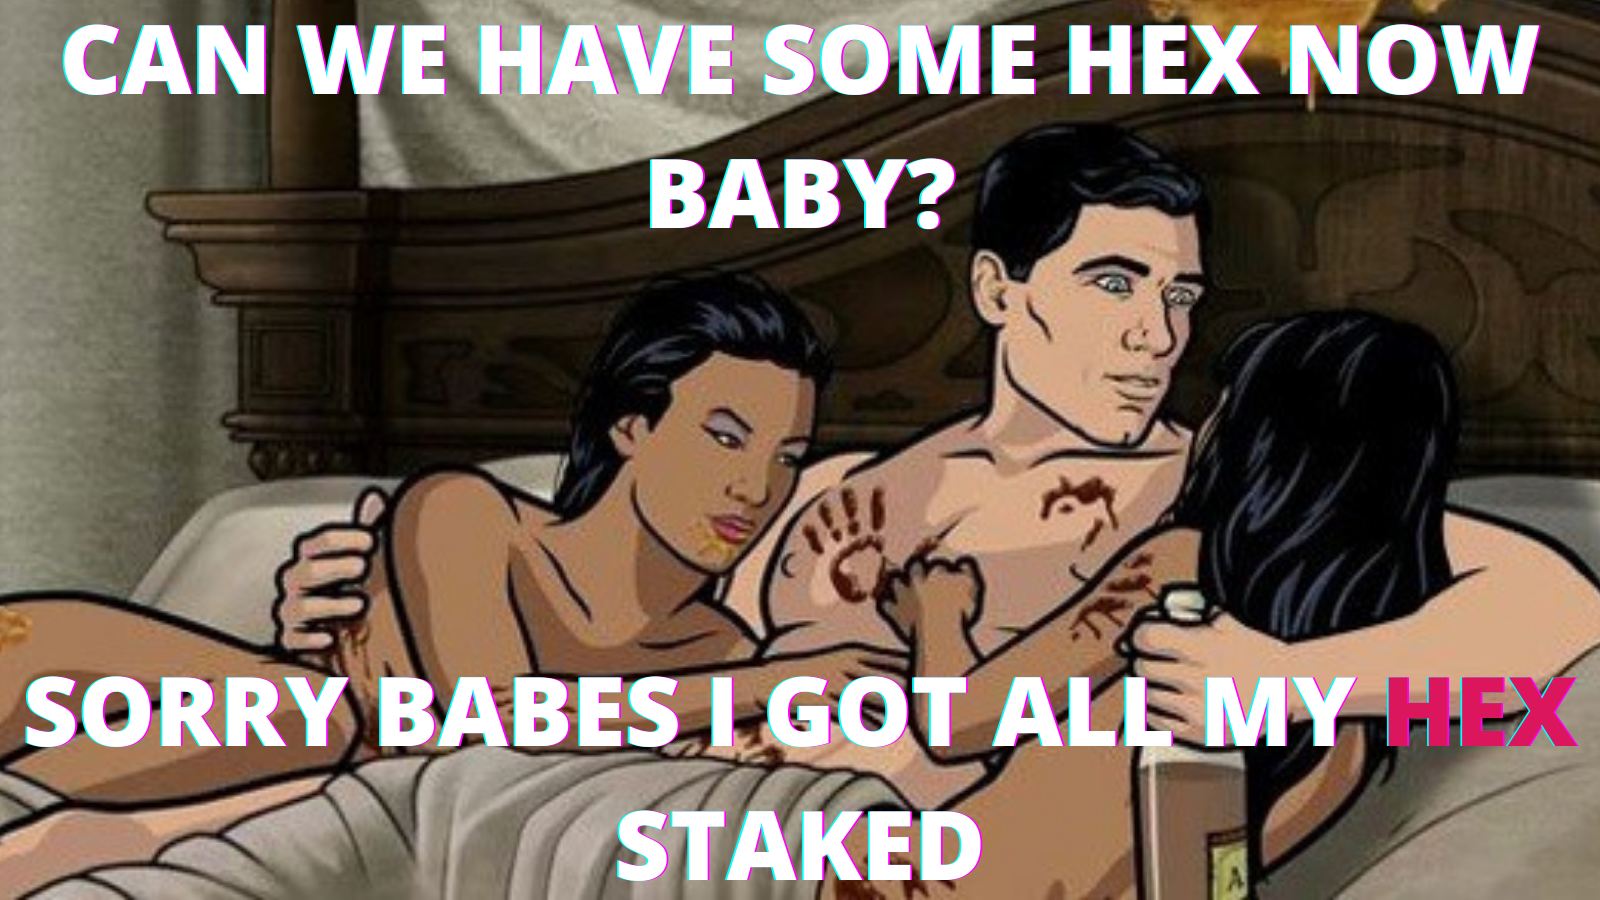 من HEX Staked خود را دریافت کردم - #HEX #Memes